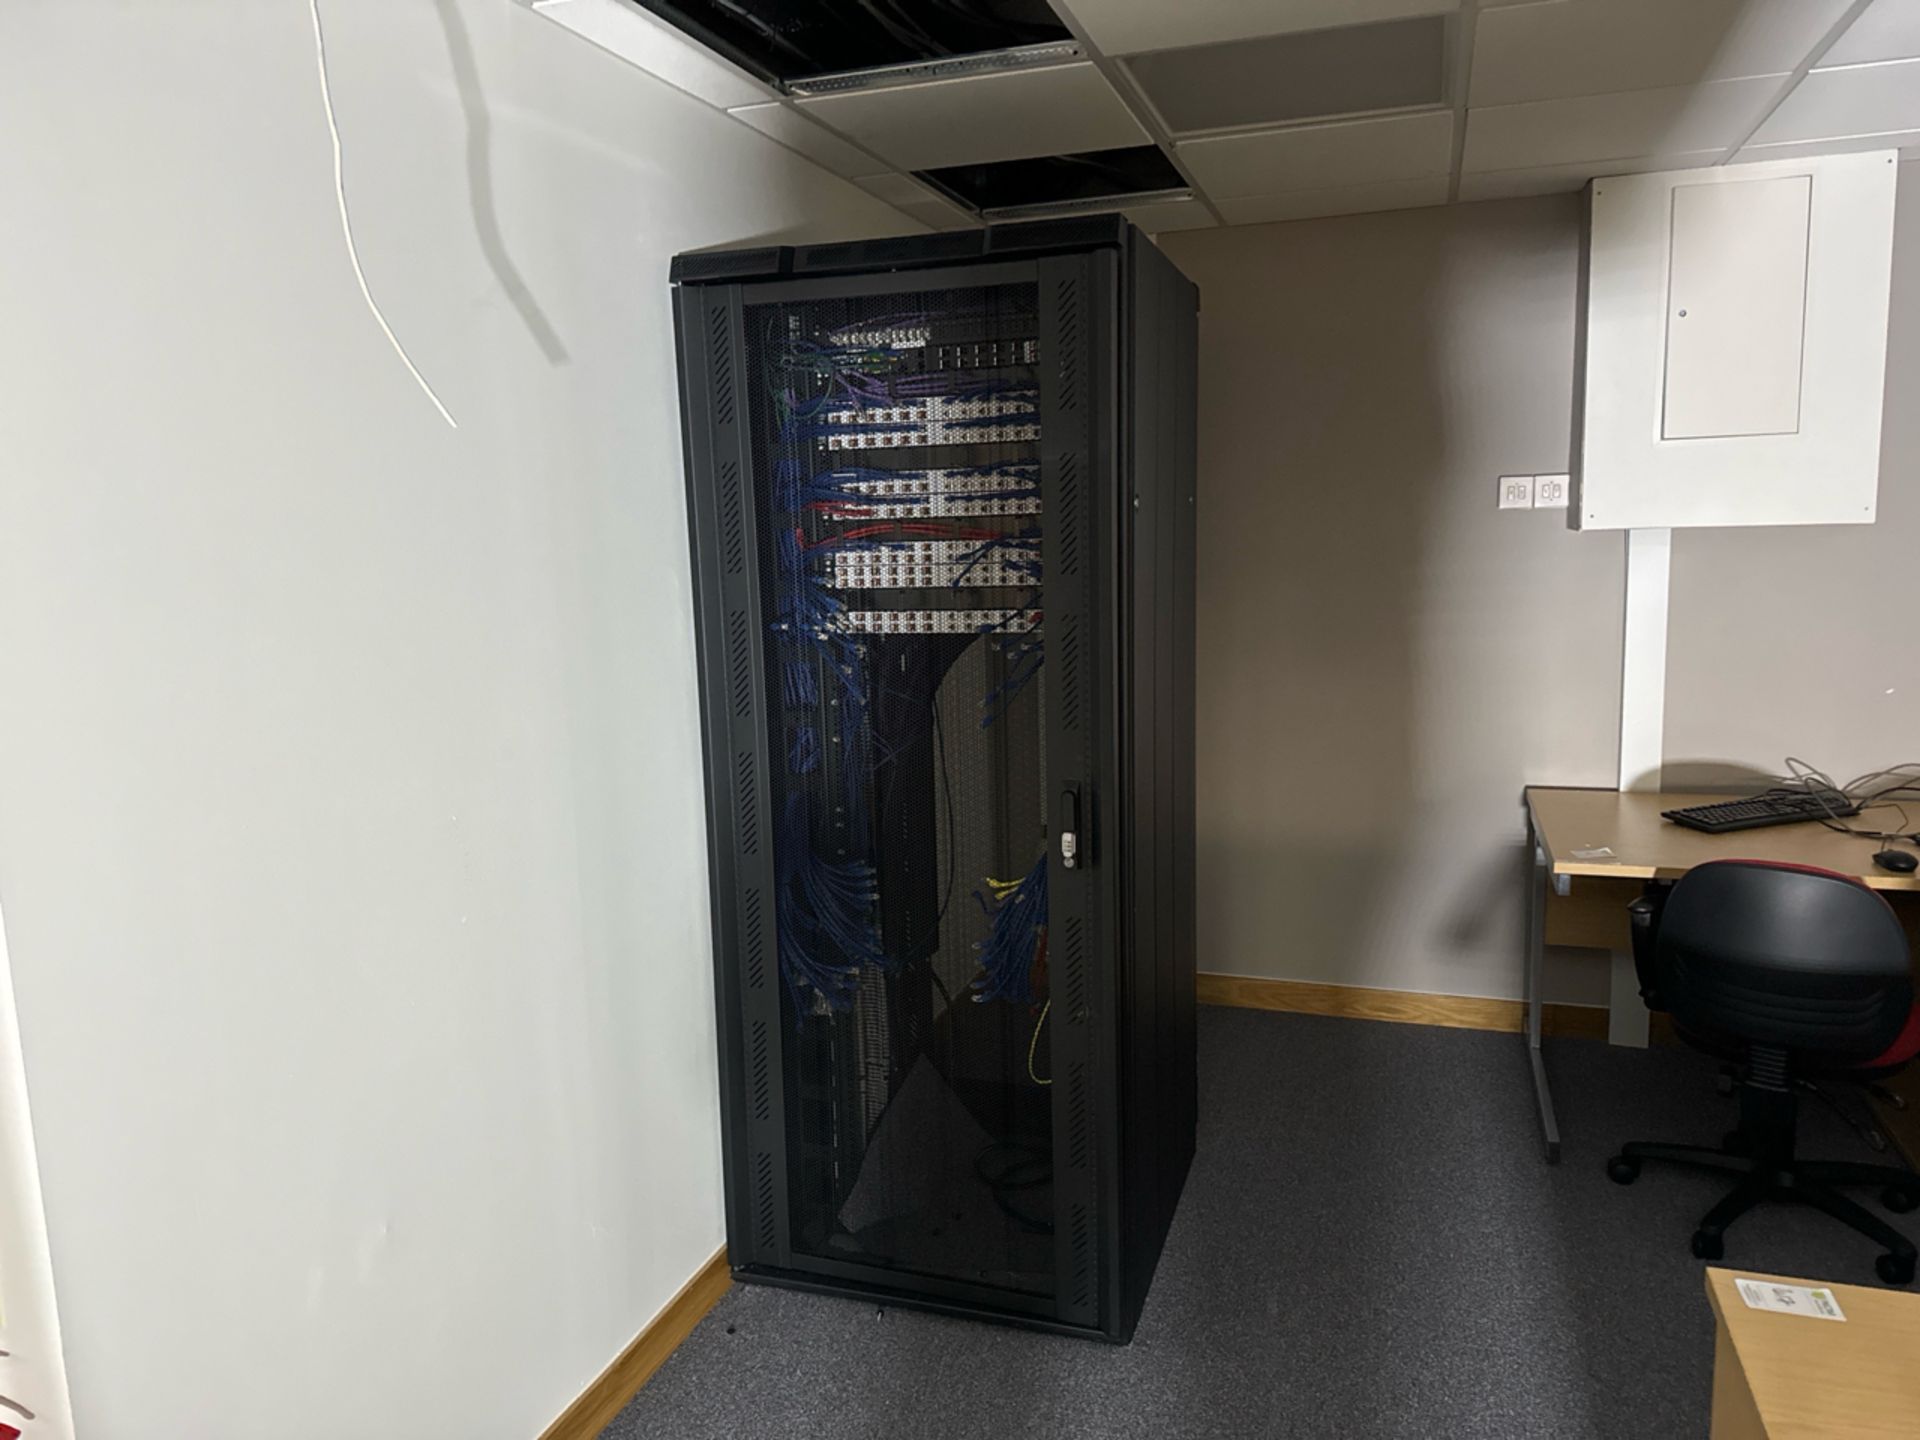 Black Server Cabinet